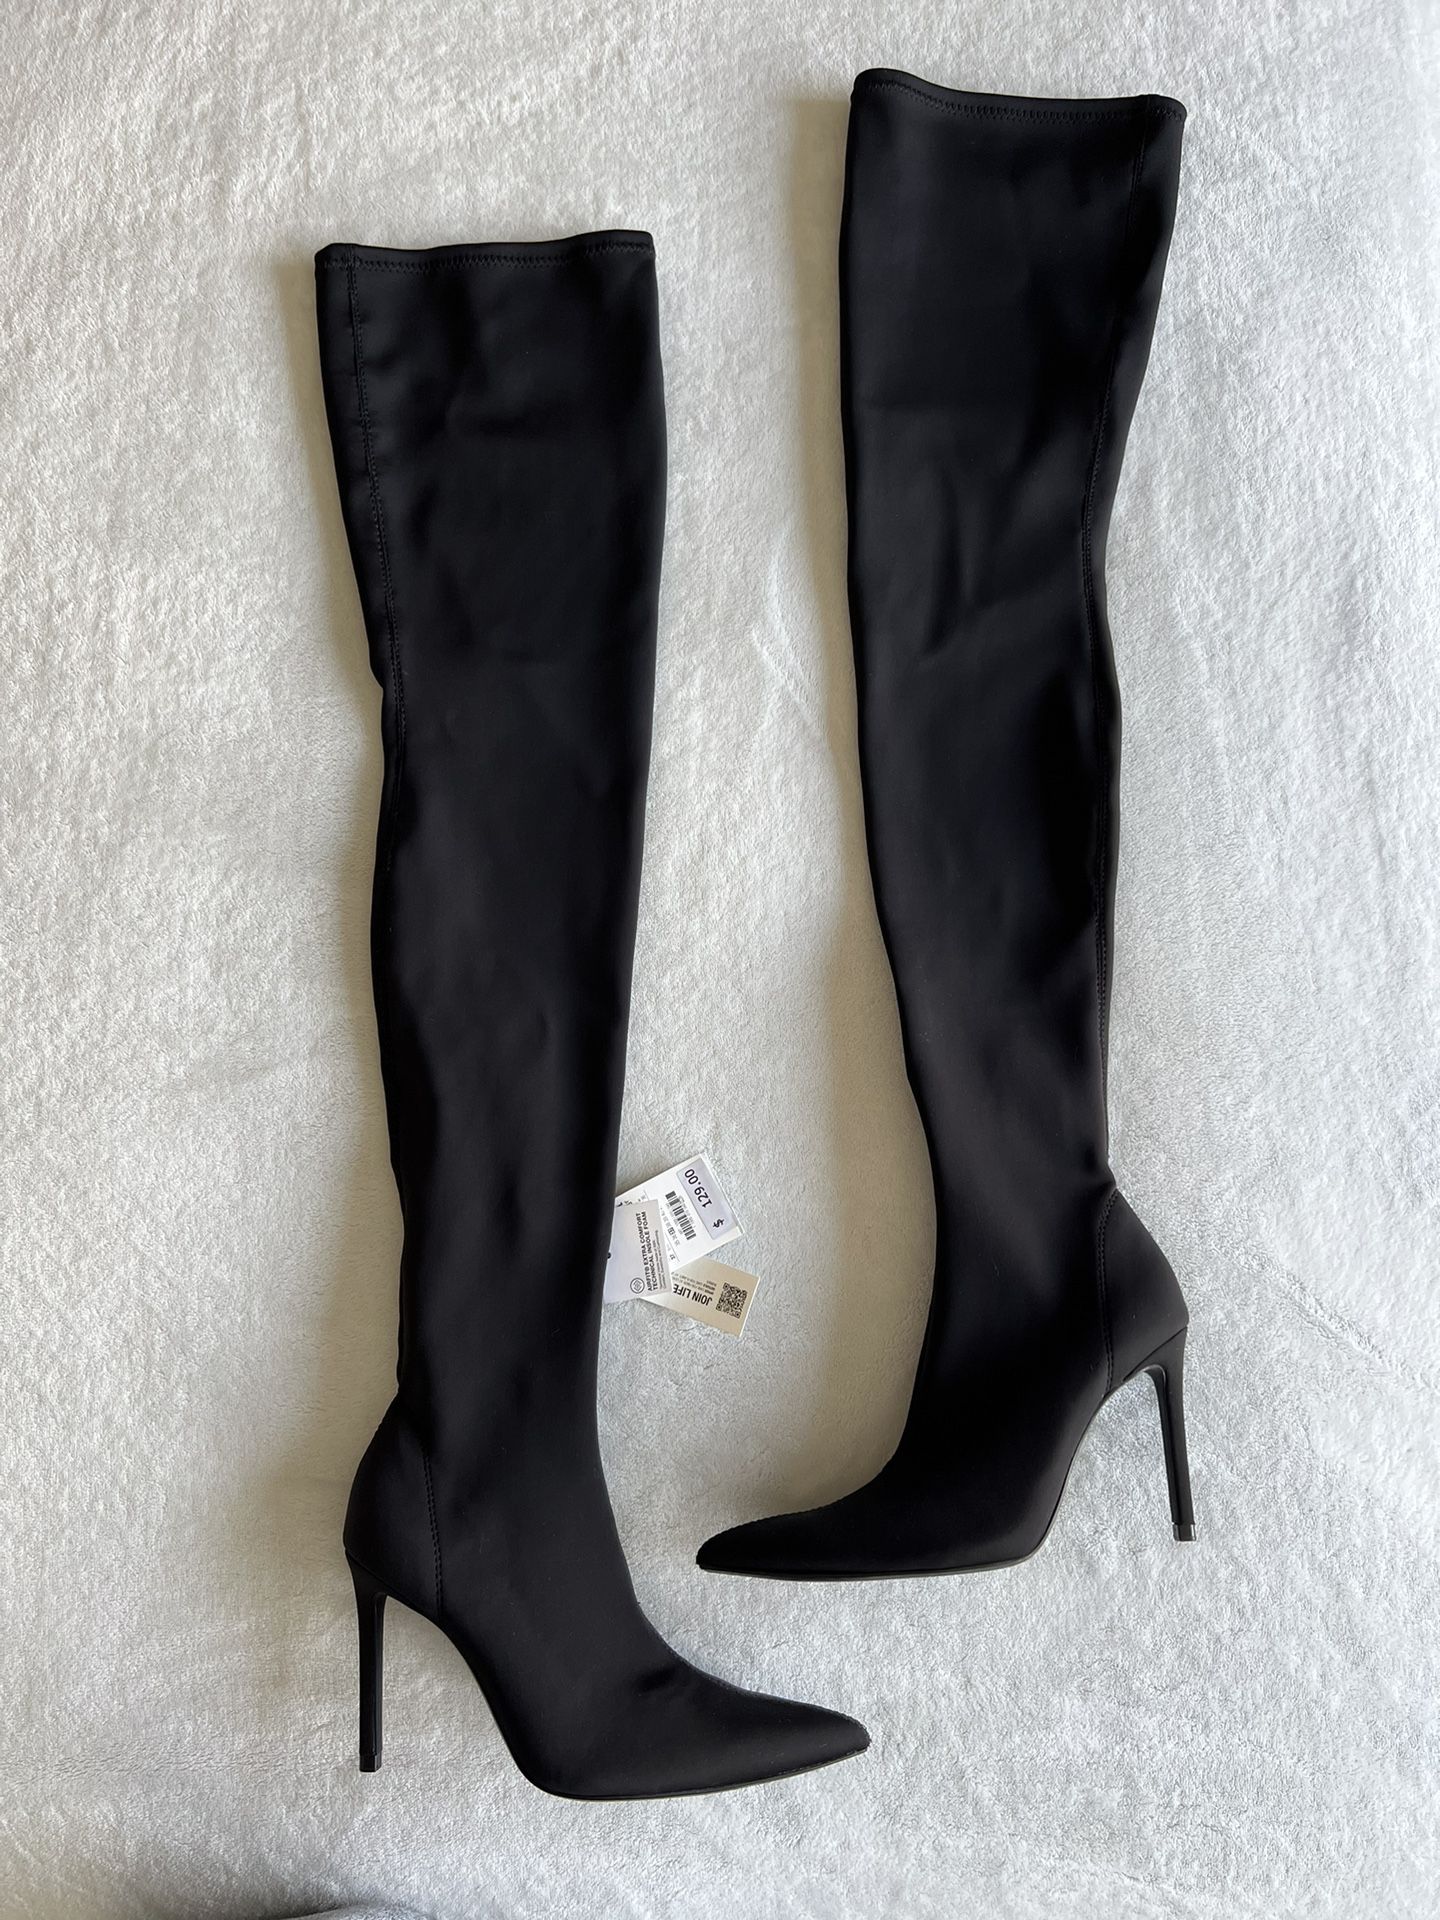 Zara Thigh High Boots 